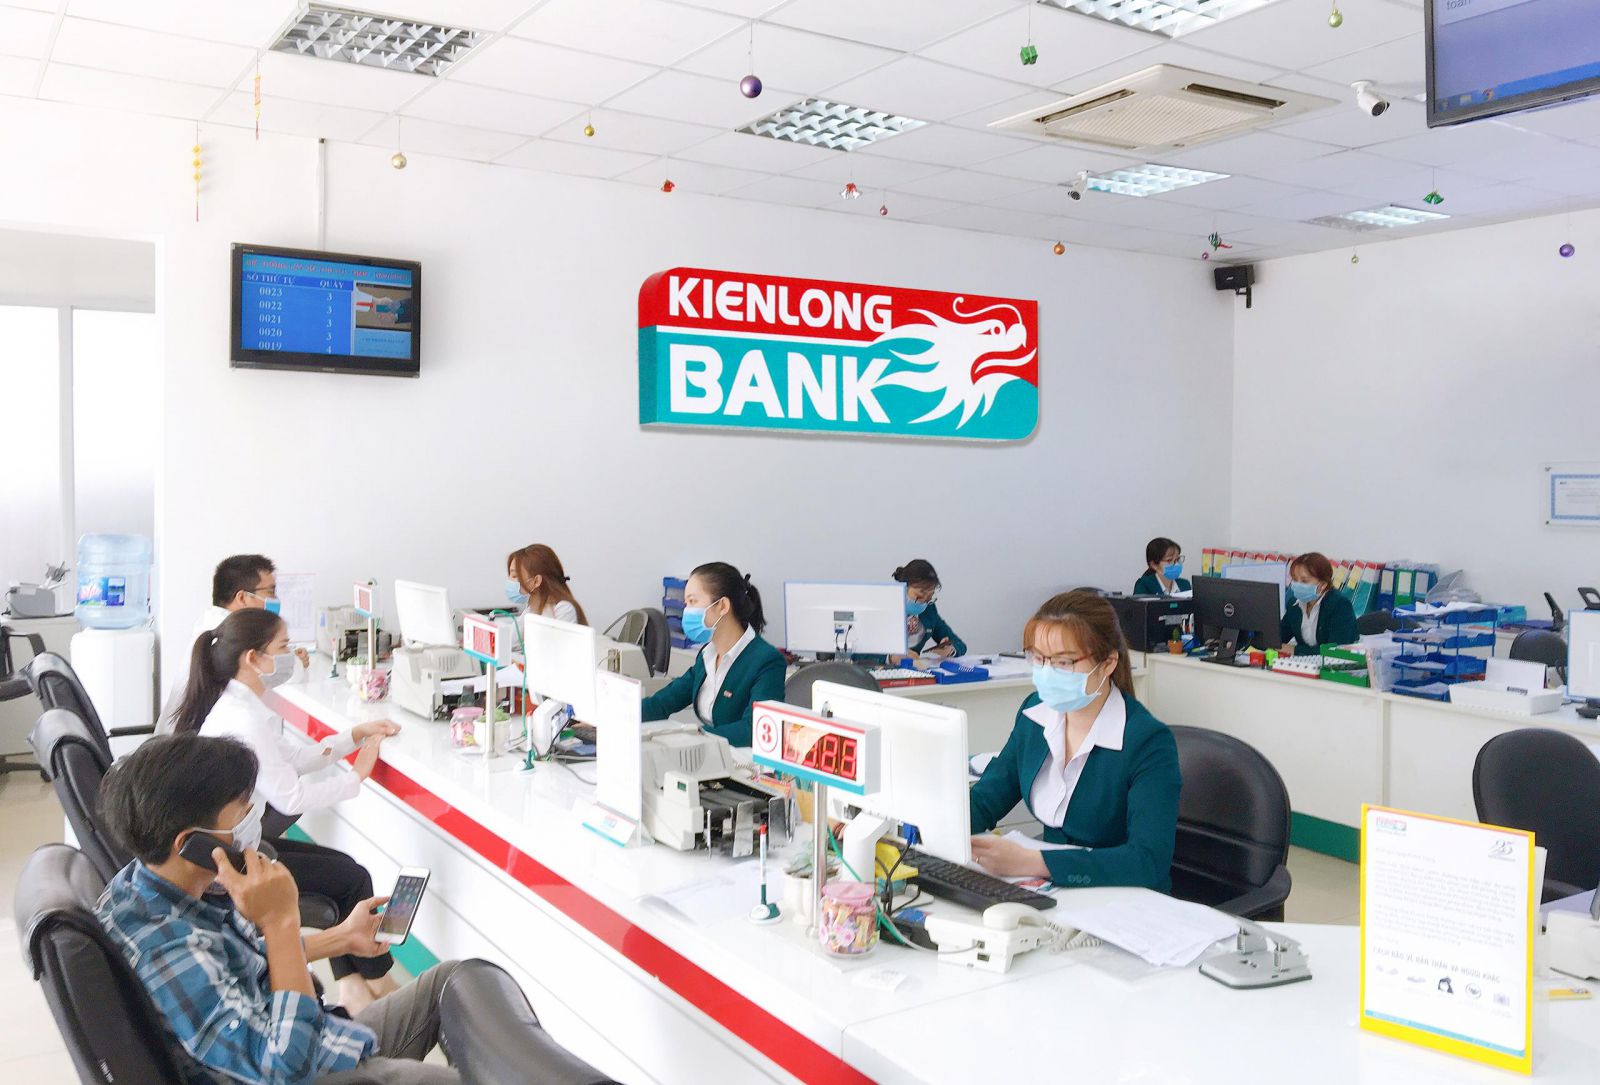 Kienlongbank miễn phí chuyển tiền trong và ngoài hệ thống dành cho mọi khách hàng